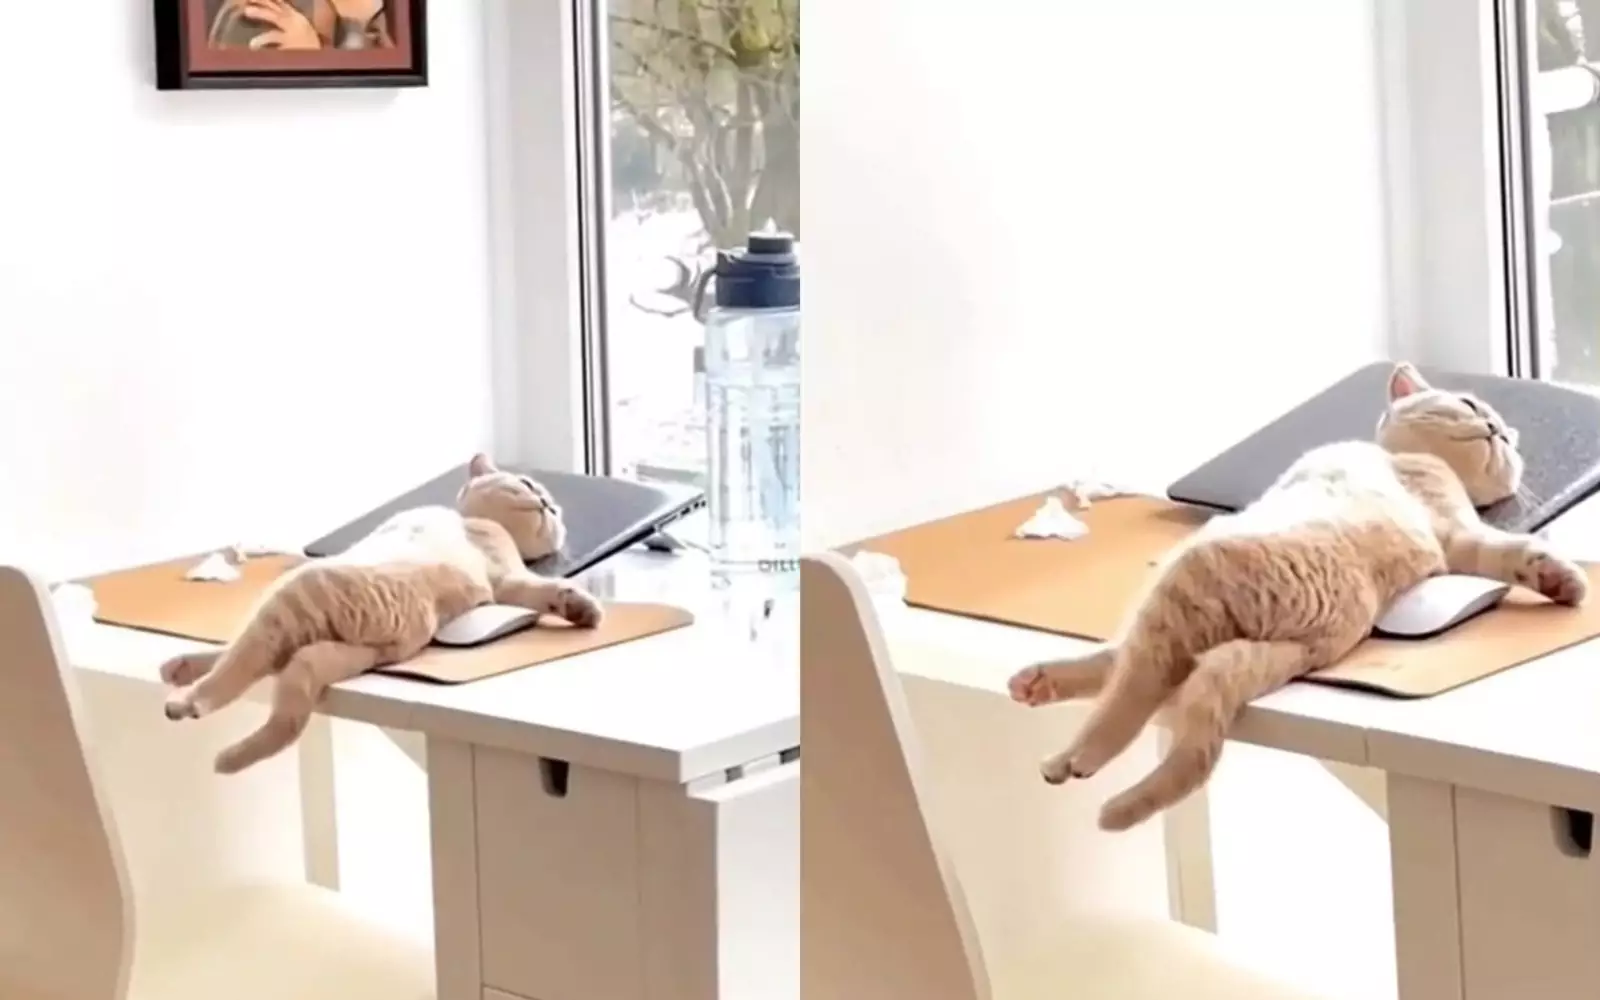 Все, у меня выходные»: кот забил на работу и уснул на письменном столе